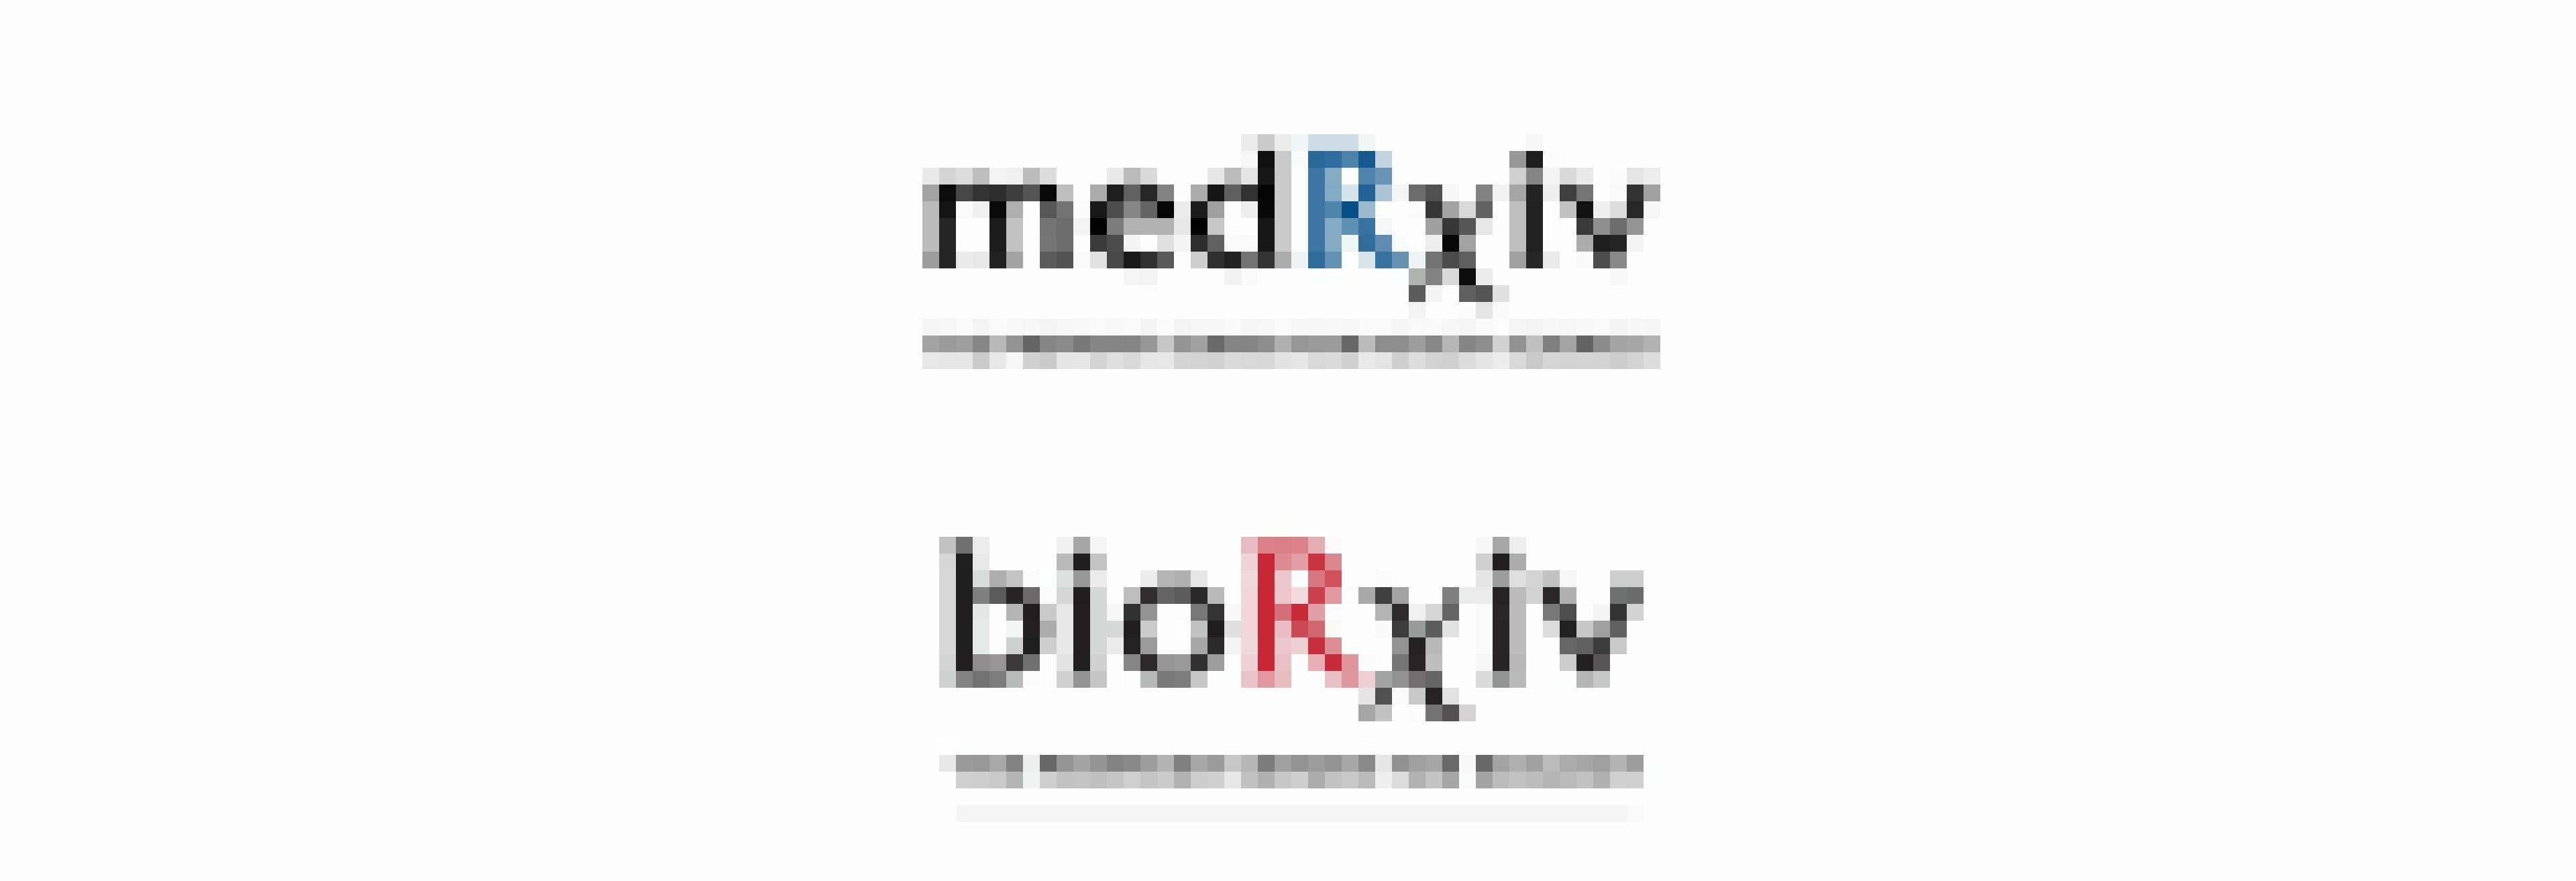 Das Bild zeigt die Logos der Preprint-Server medRxiv und bioRxiv.